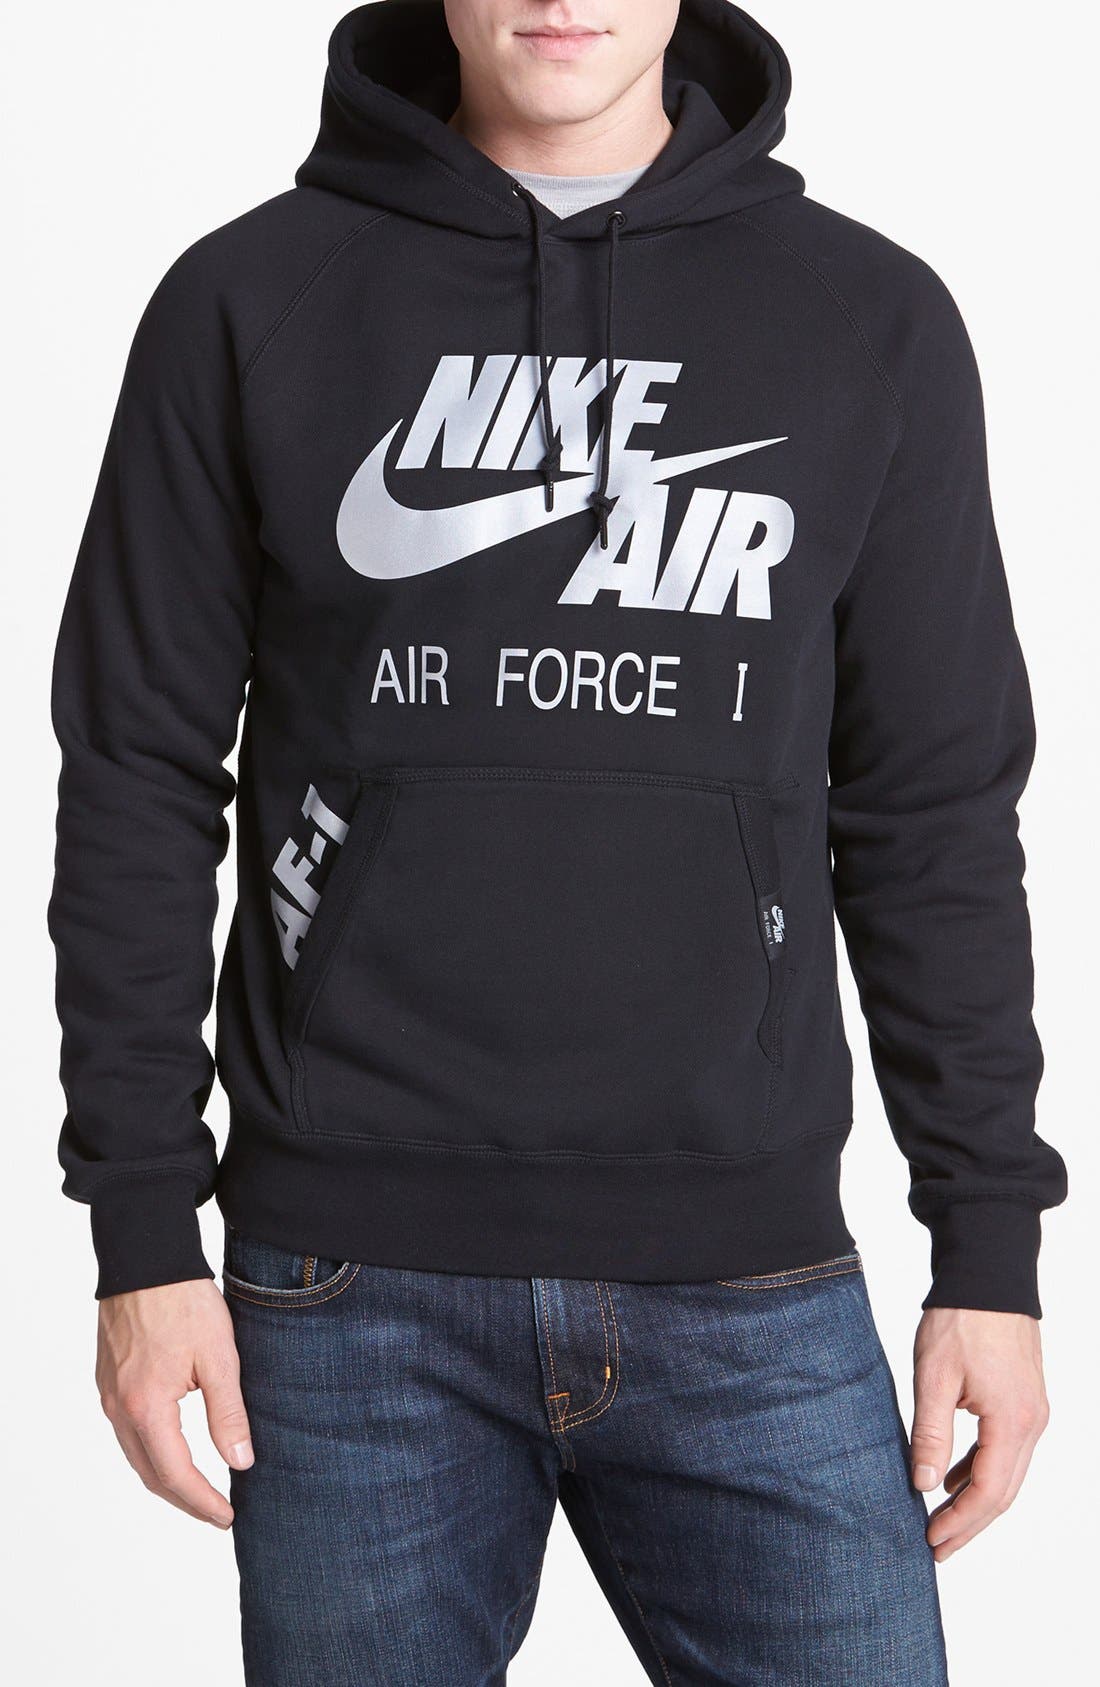 nike air force 1 sweatshirt